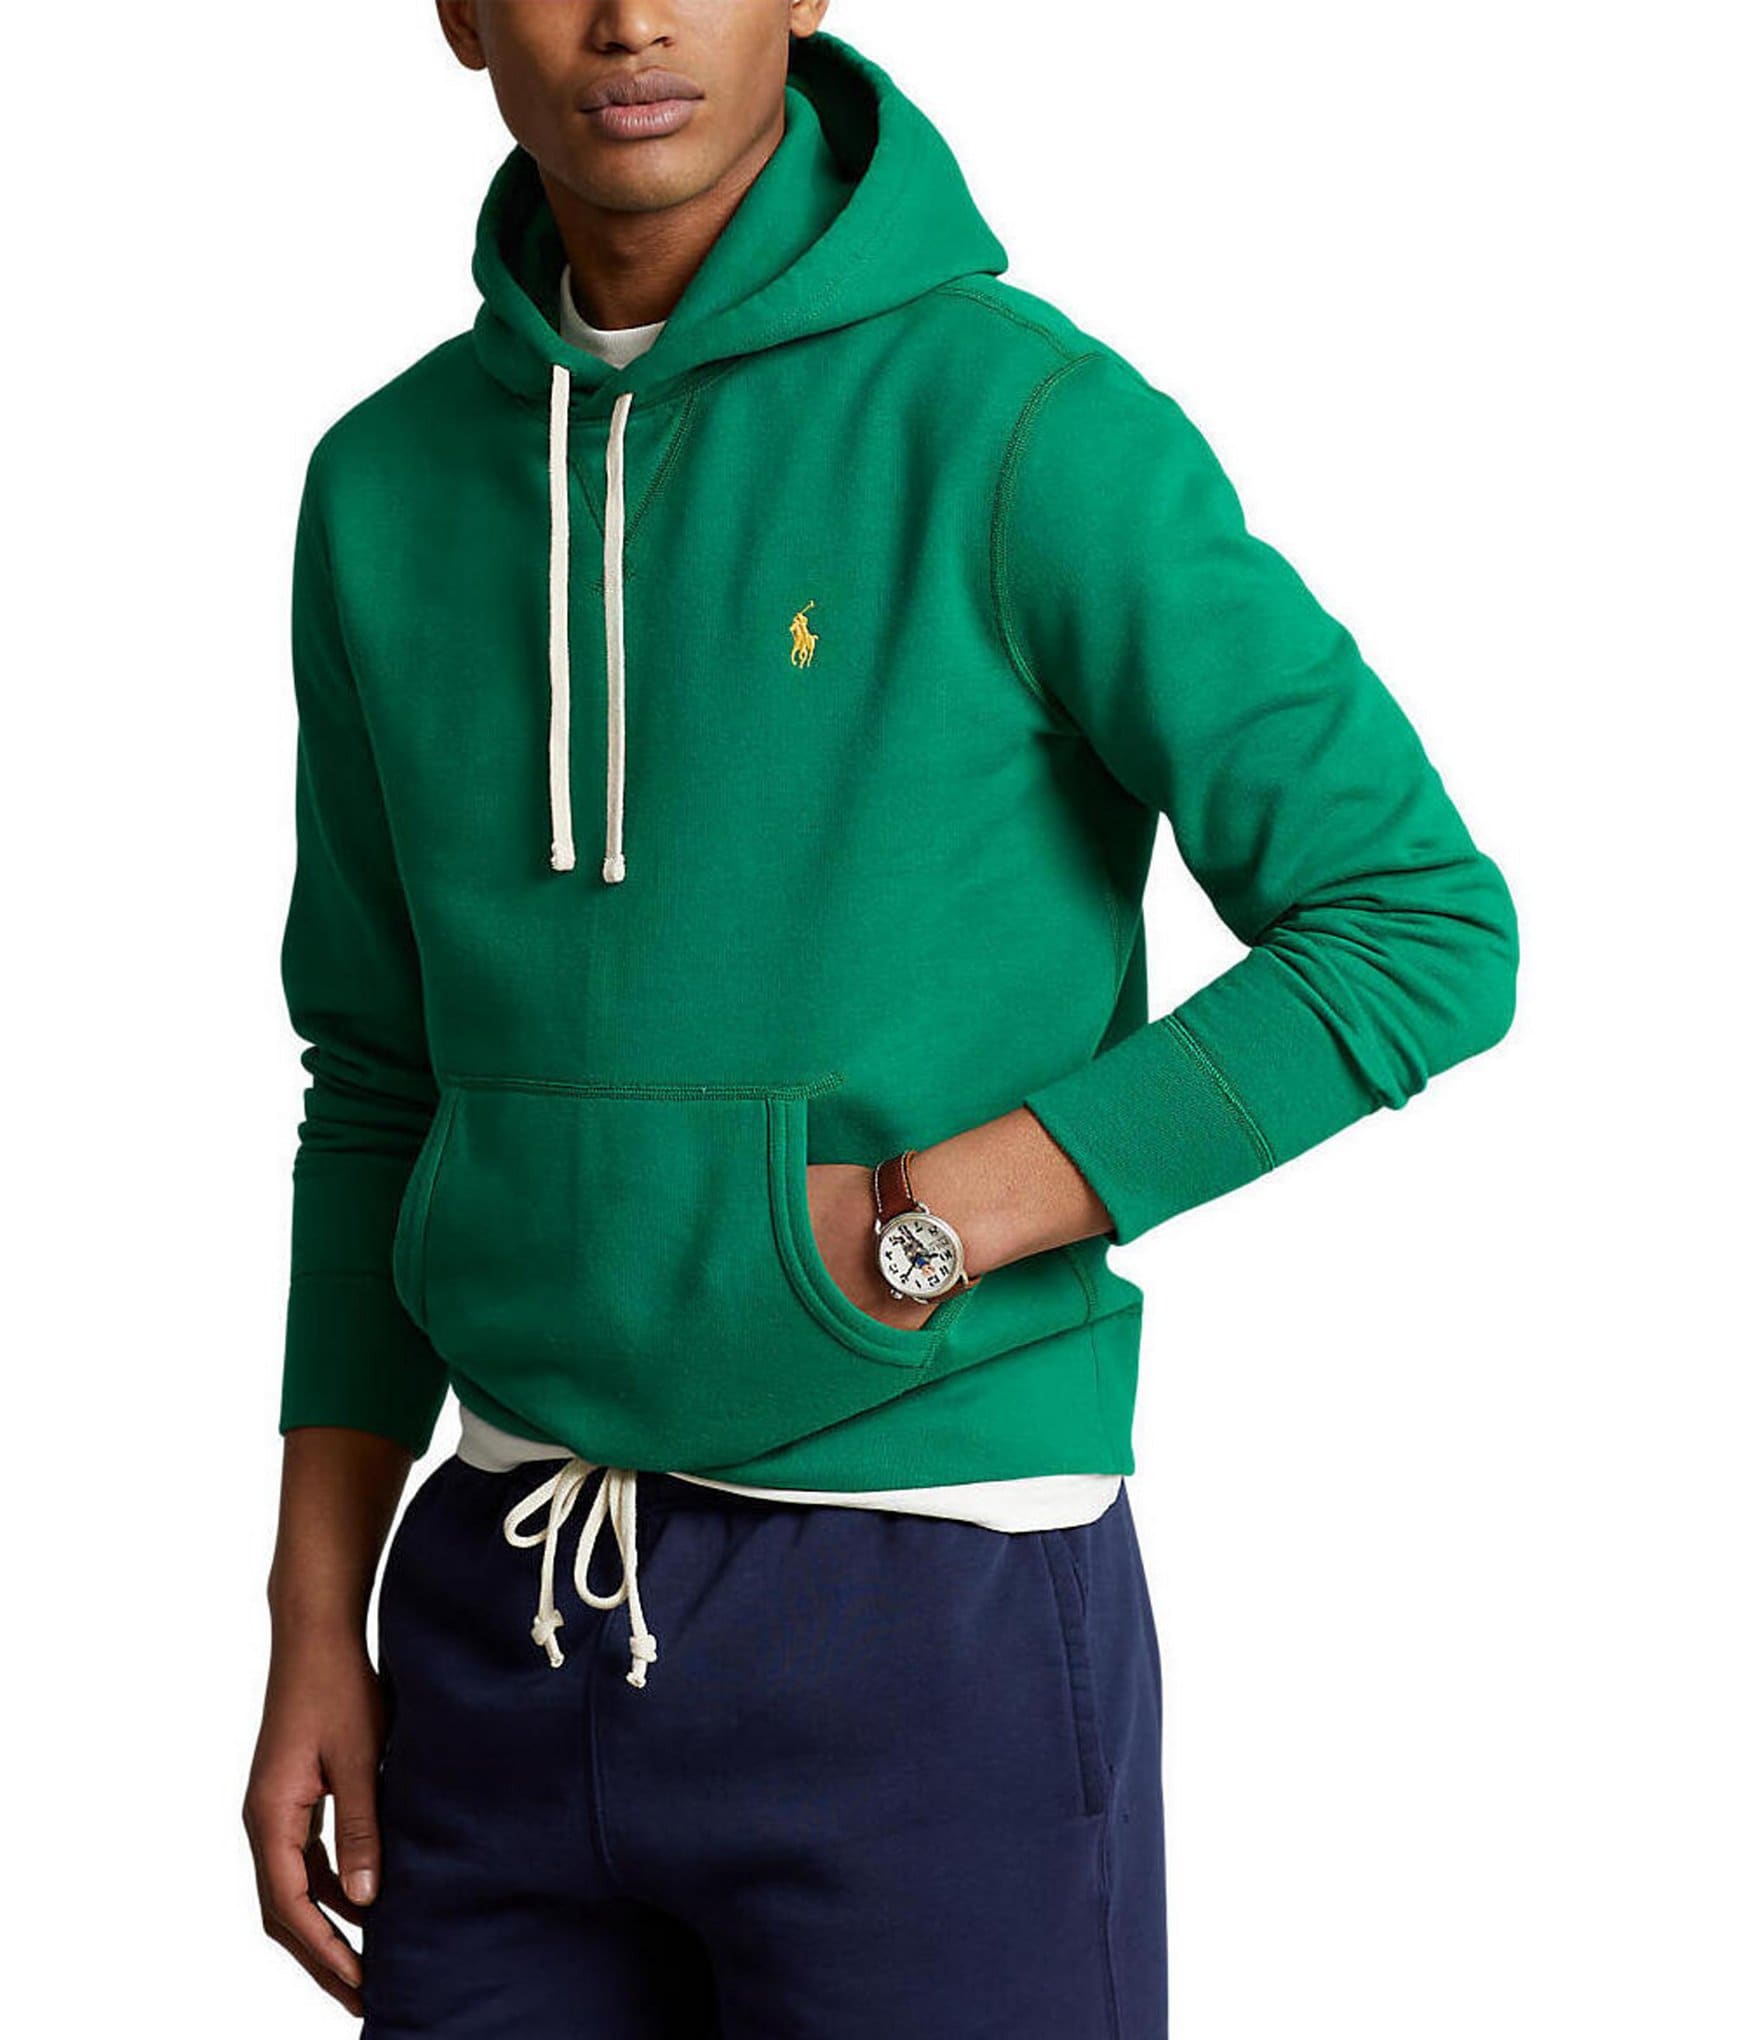 Green Men's Hoodies & Sweatshirts | Dillard's